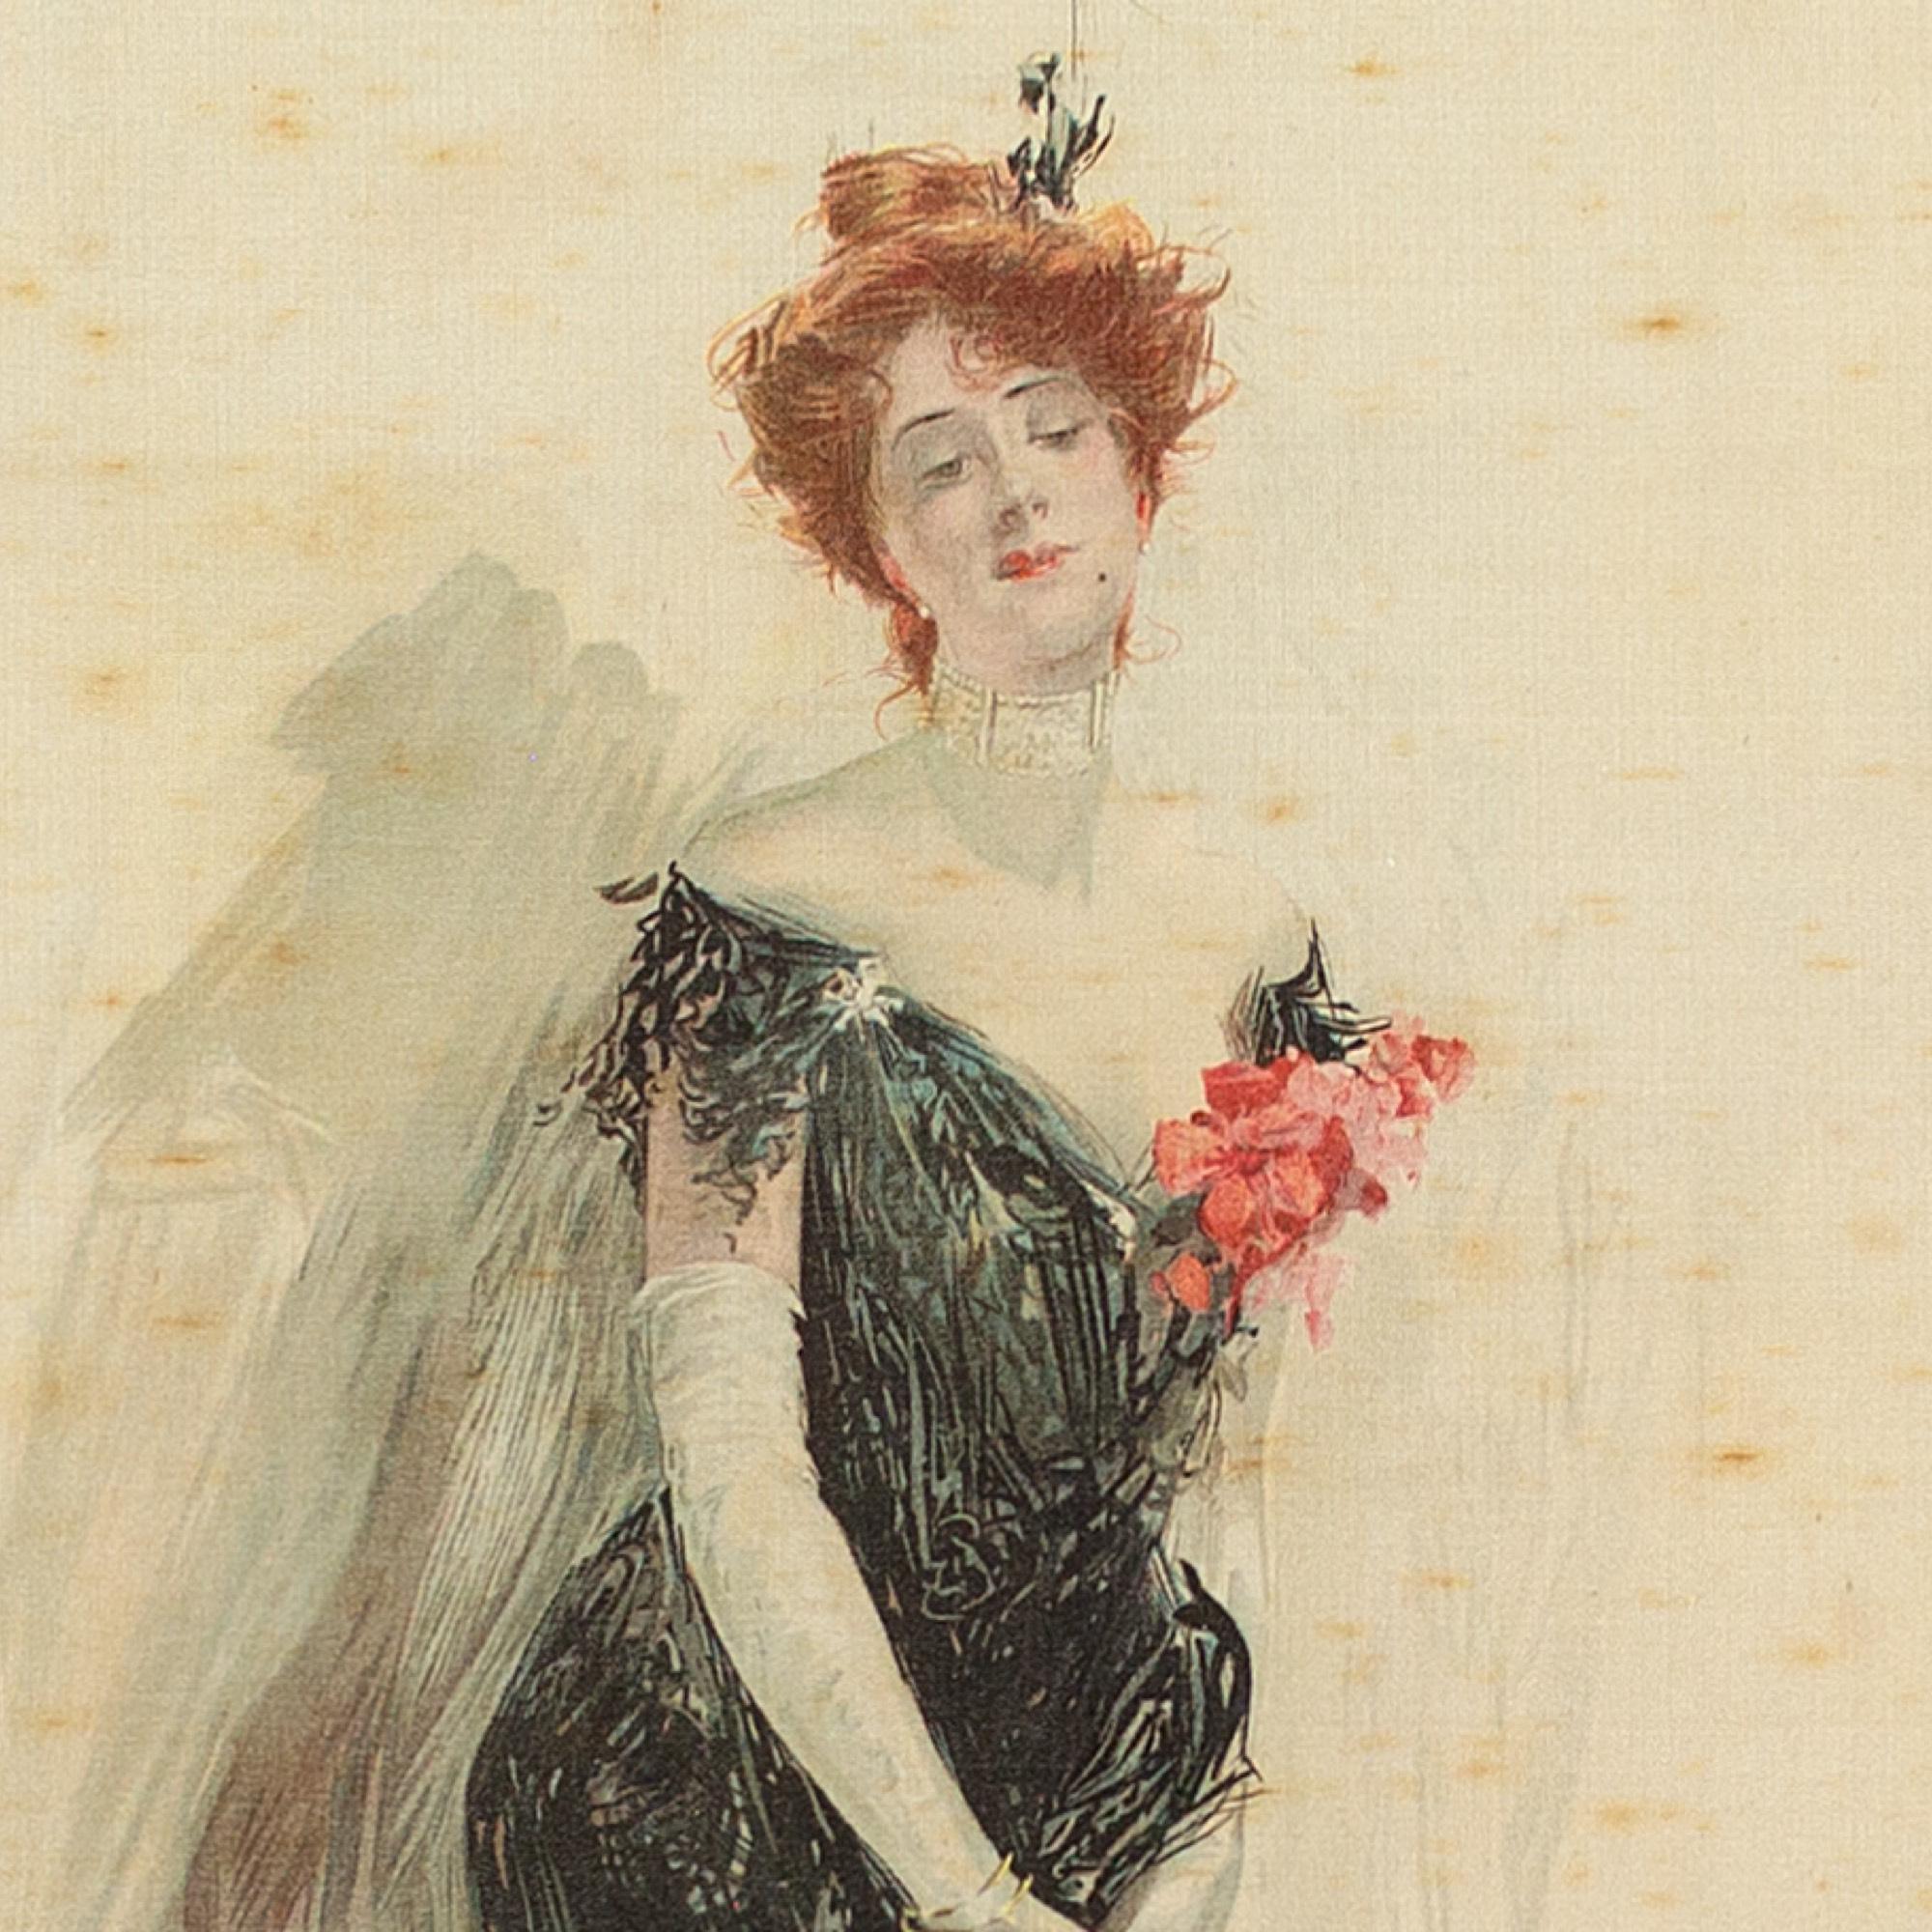 Reginald Pannett The Merry Widow, Sheet Music Cover Design, Watercolour For Sale 5